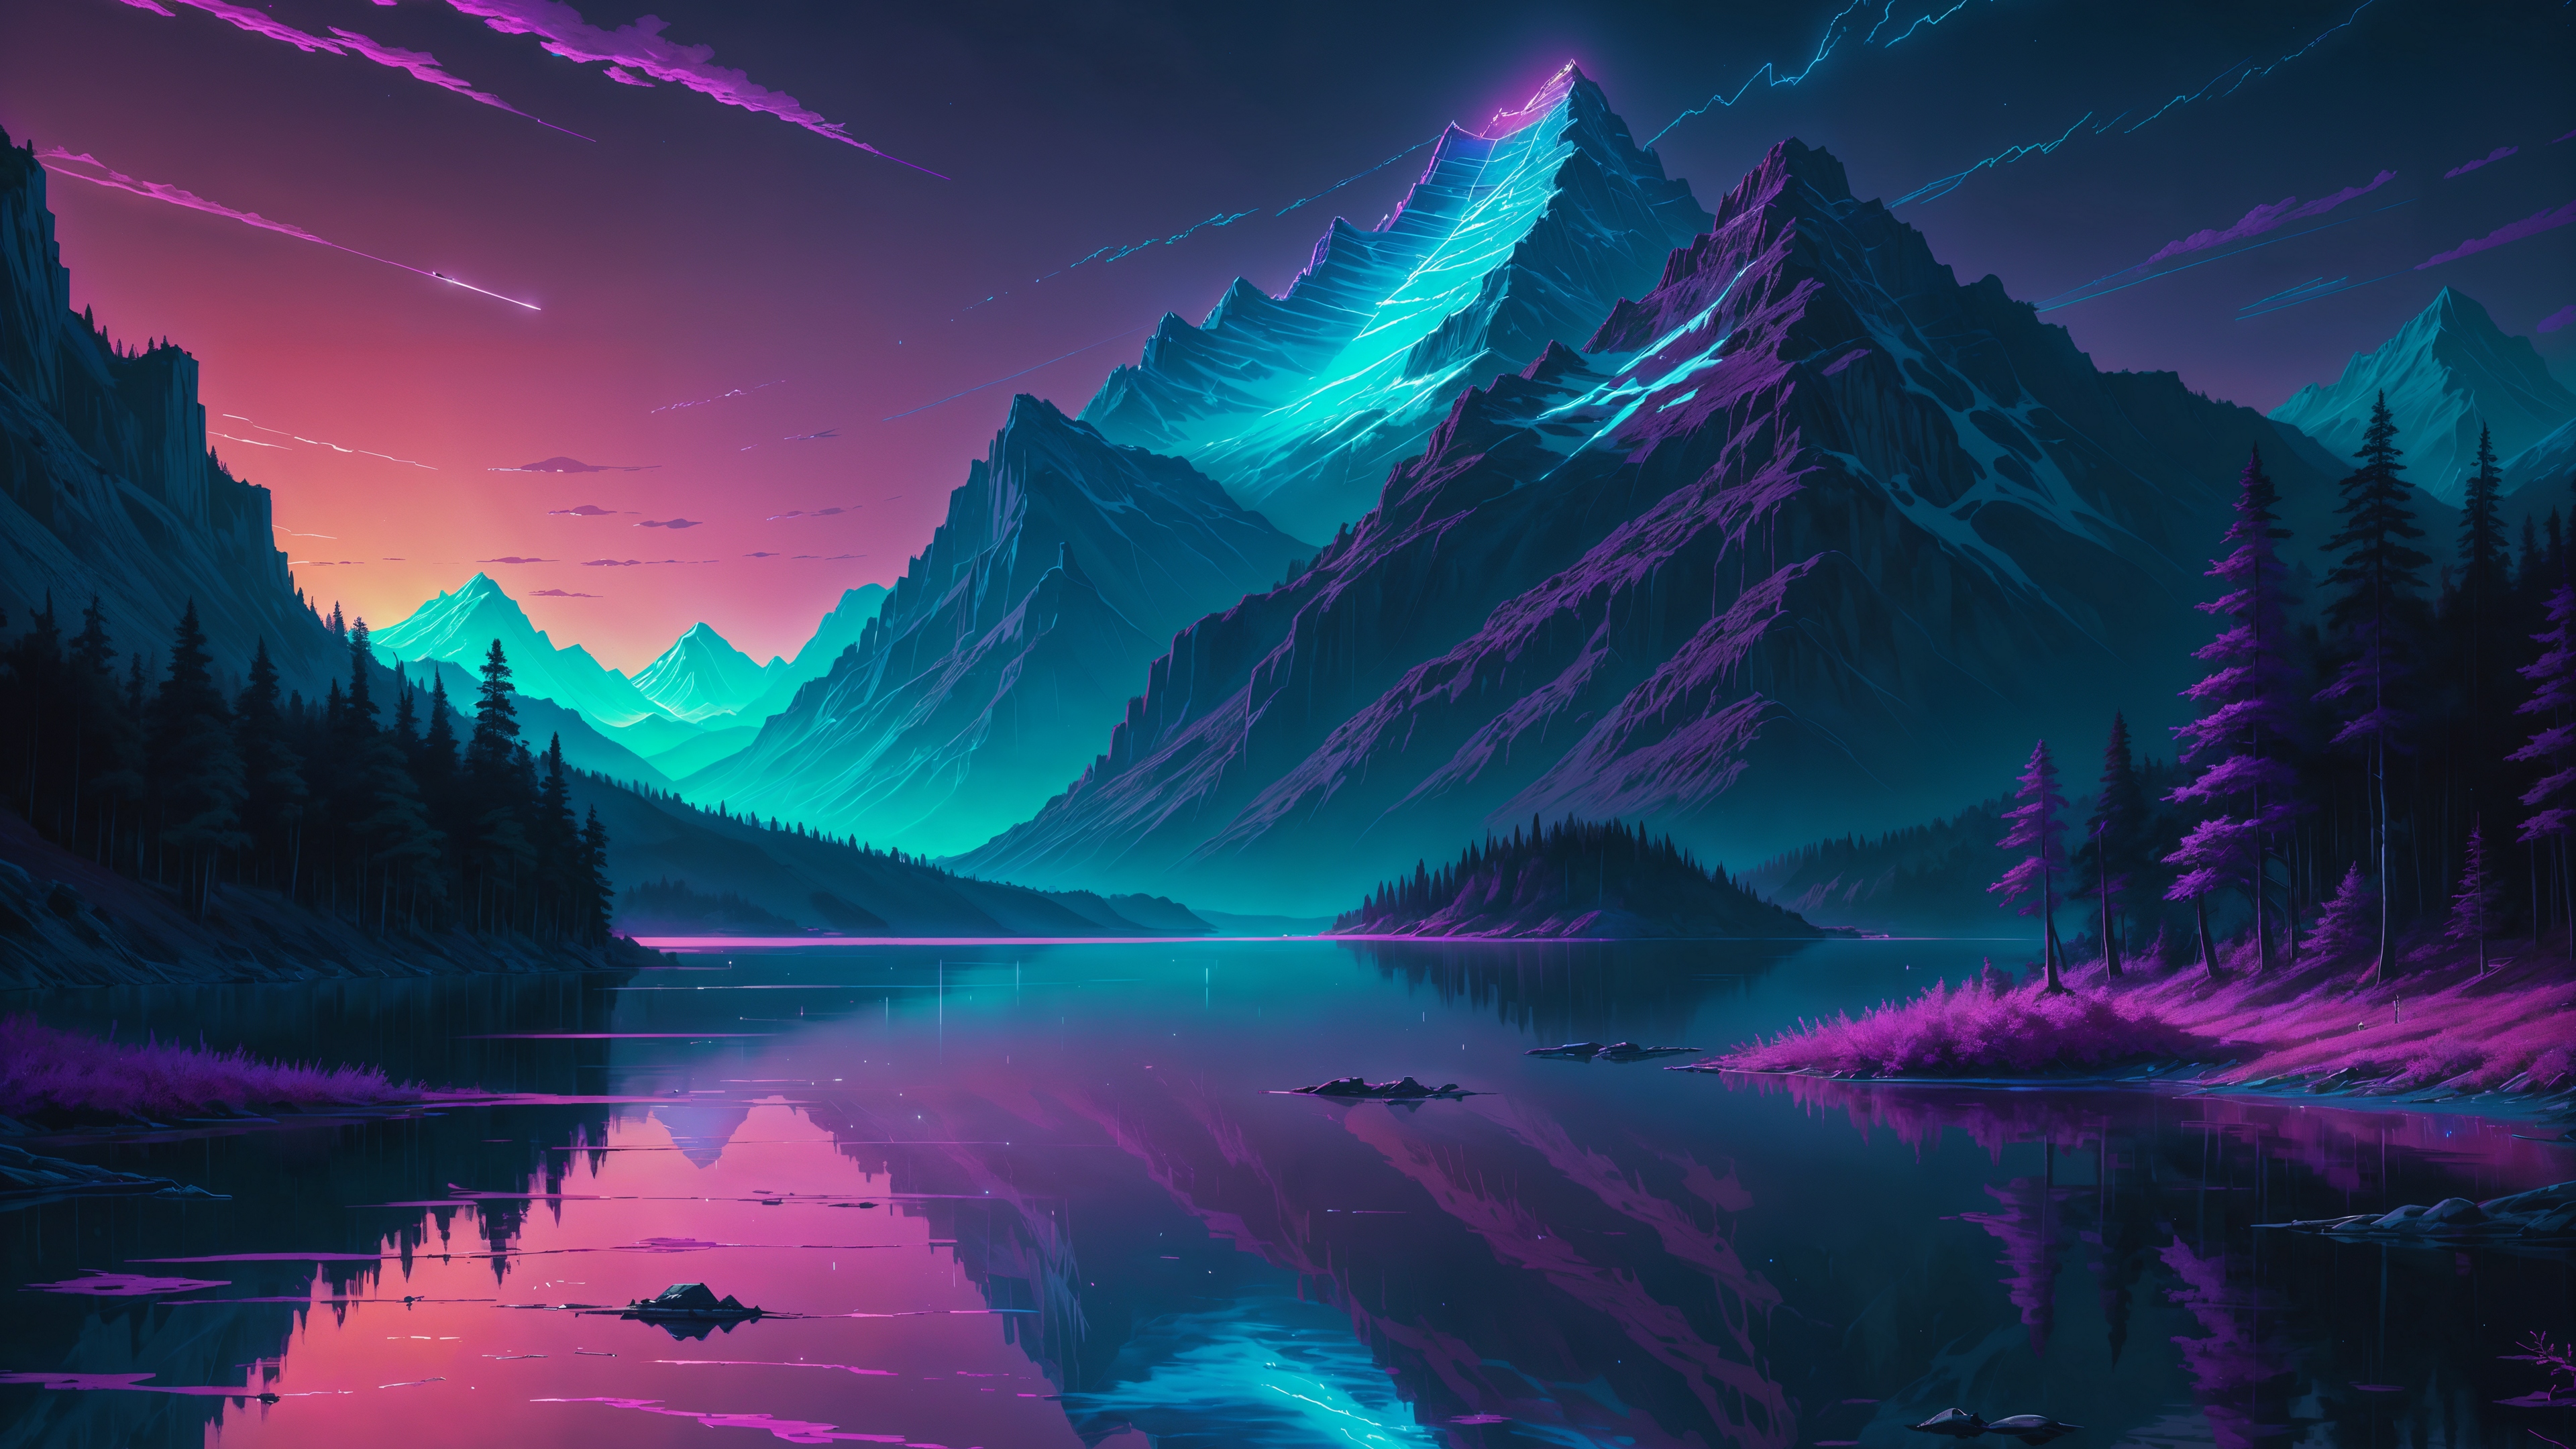 Бесплатное фото Заходящее солнце окрасило пейзаж в пурпурный цвет.